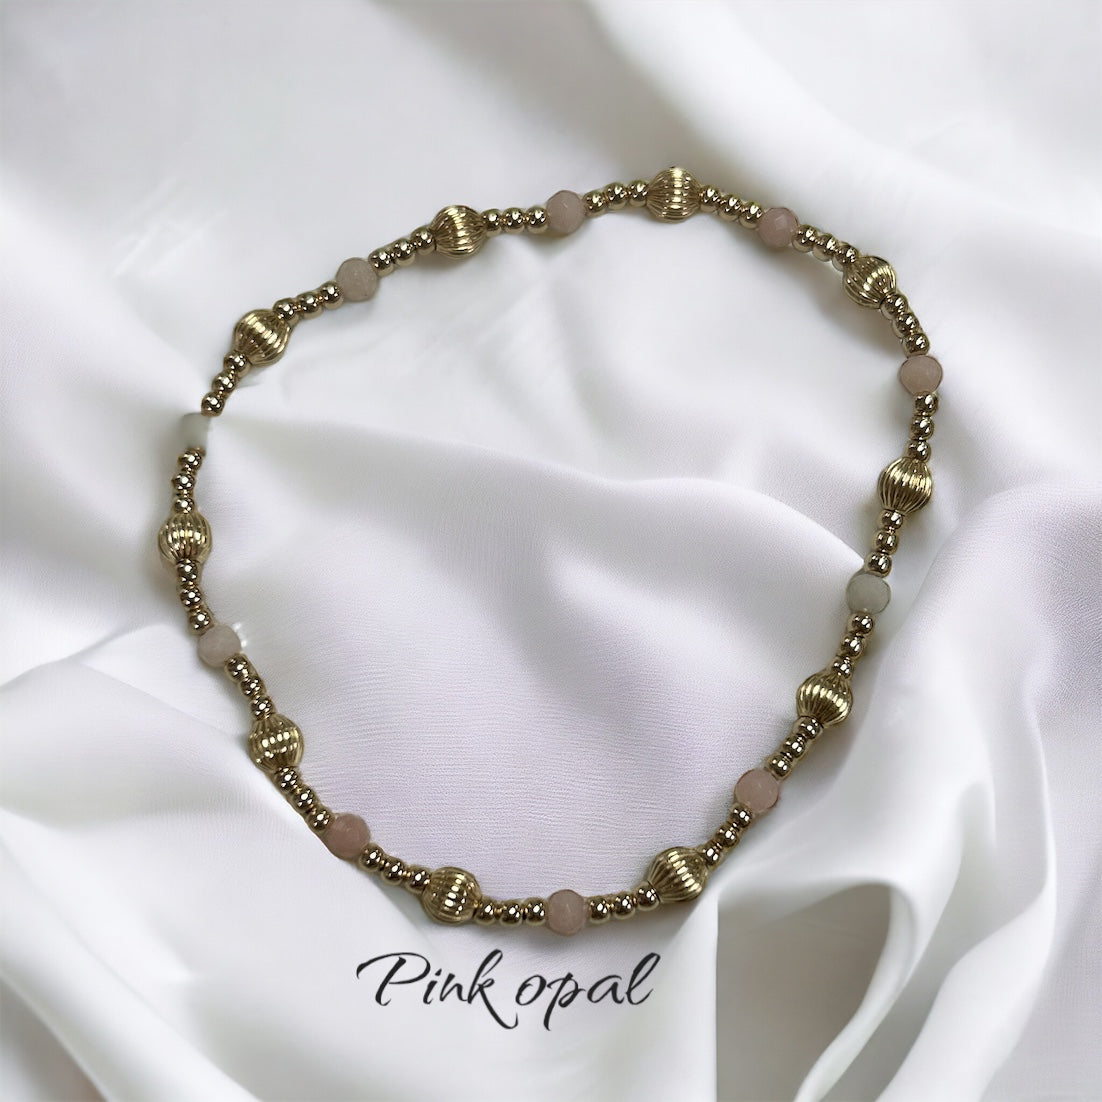 Enewton Dignity Sincerity Pattern 4mm Bead Bracelet Pink Opal